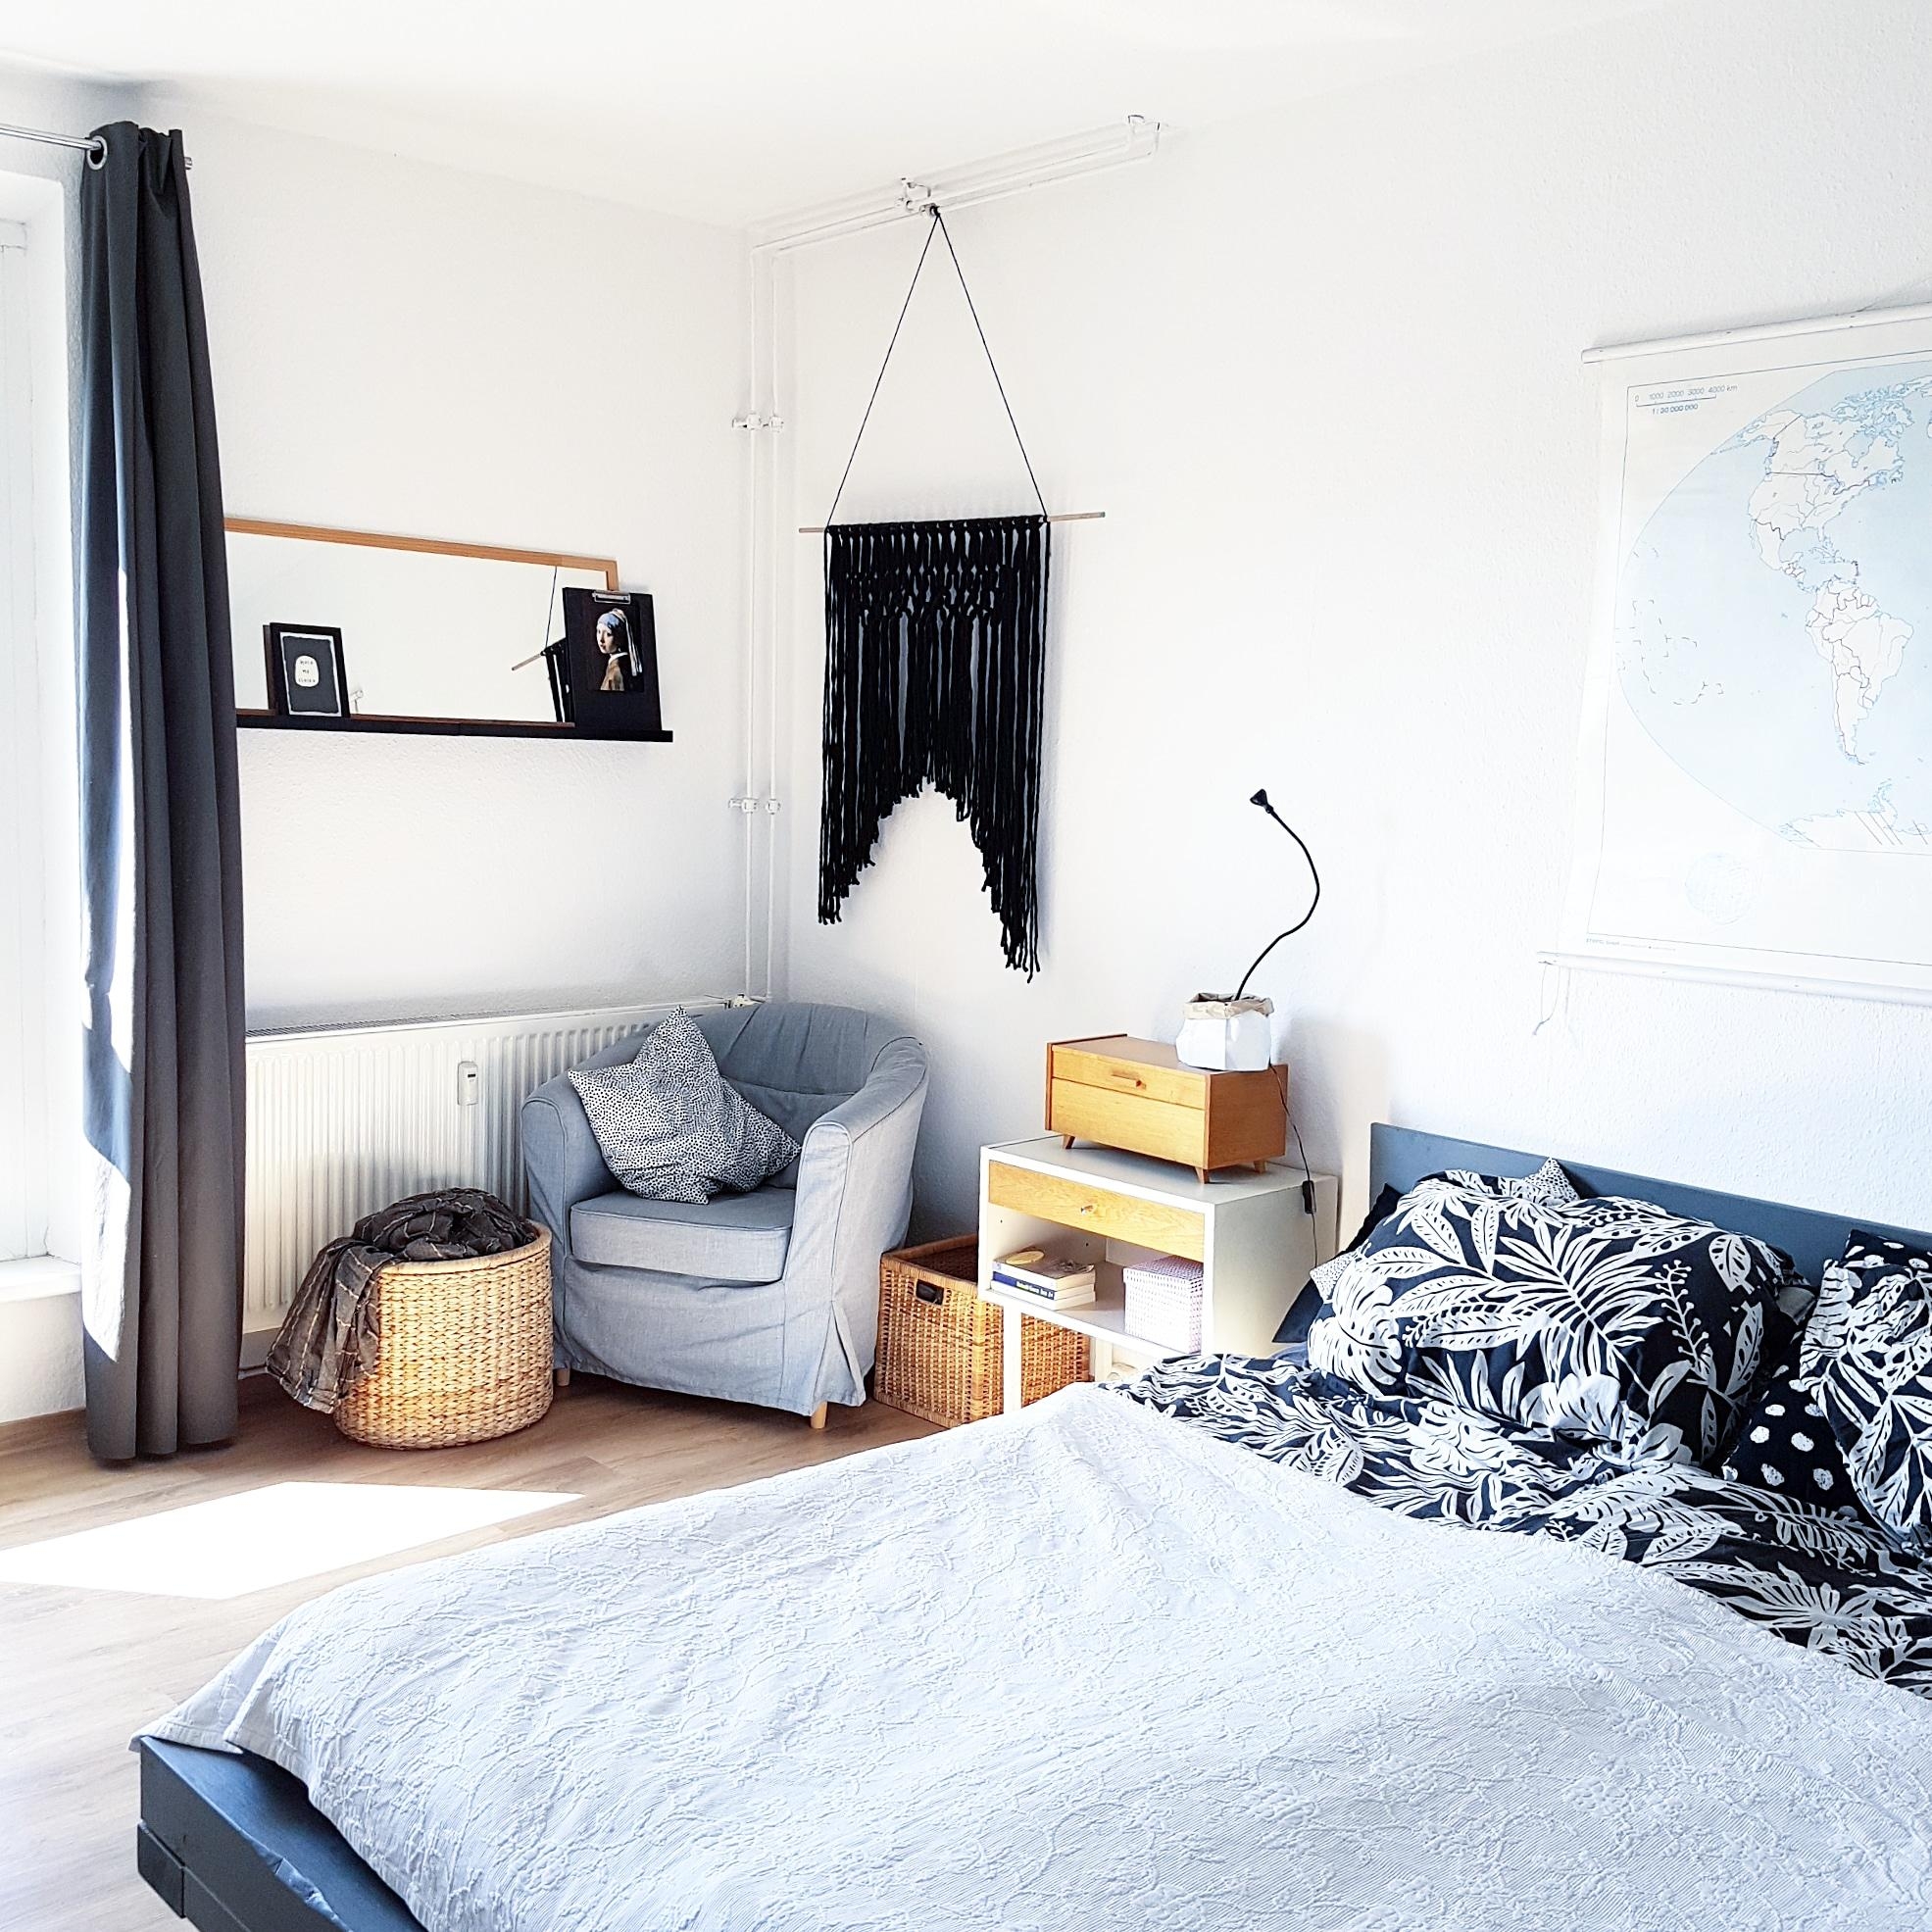 Mein Schlafzimmer mit DIY-Bett und DIY-Makramee. #scandi #diy #hygge #schlafzimmer #bedroom  #schlafzimmerdeko 